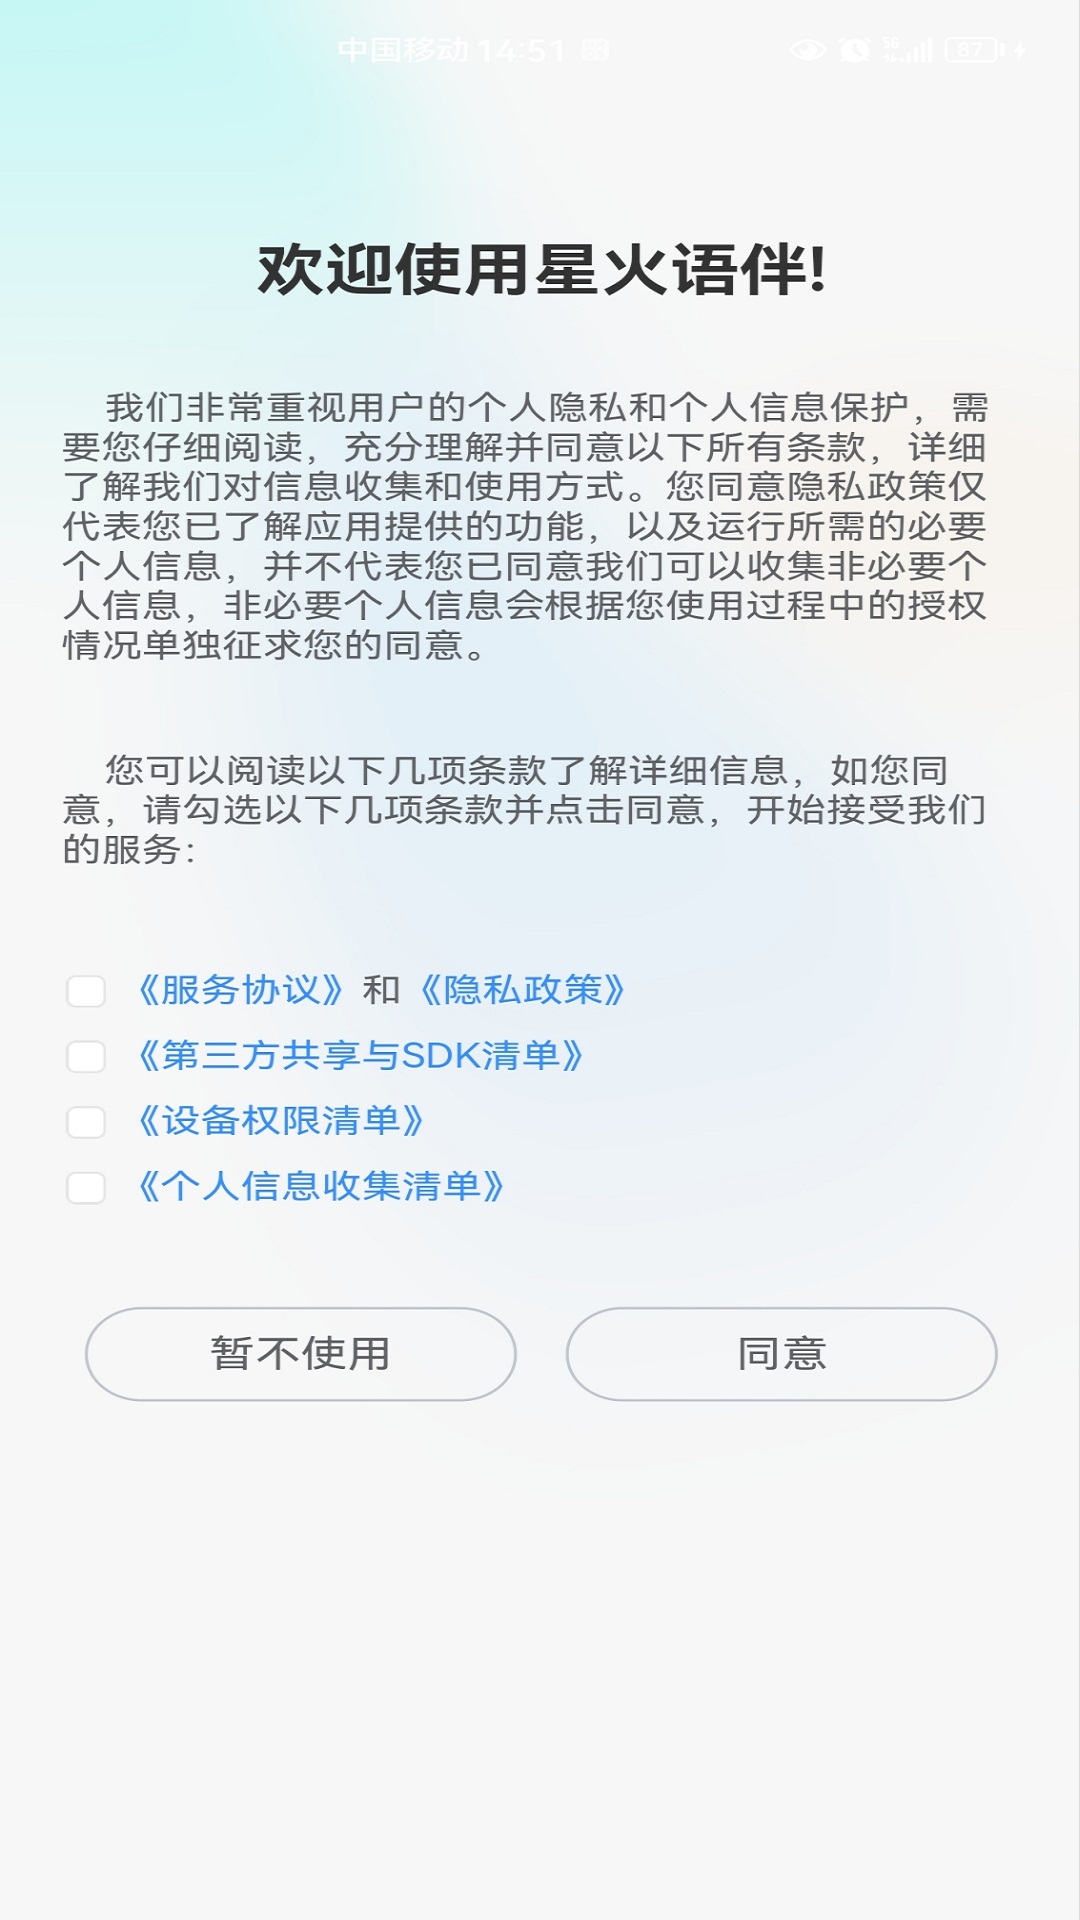 星火语伴app下载,星火语伴app官方下载 v1.0.1088